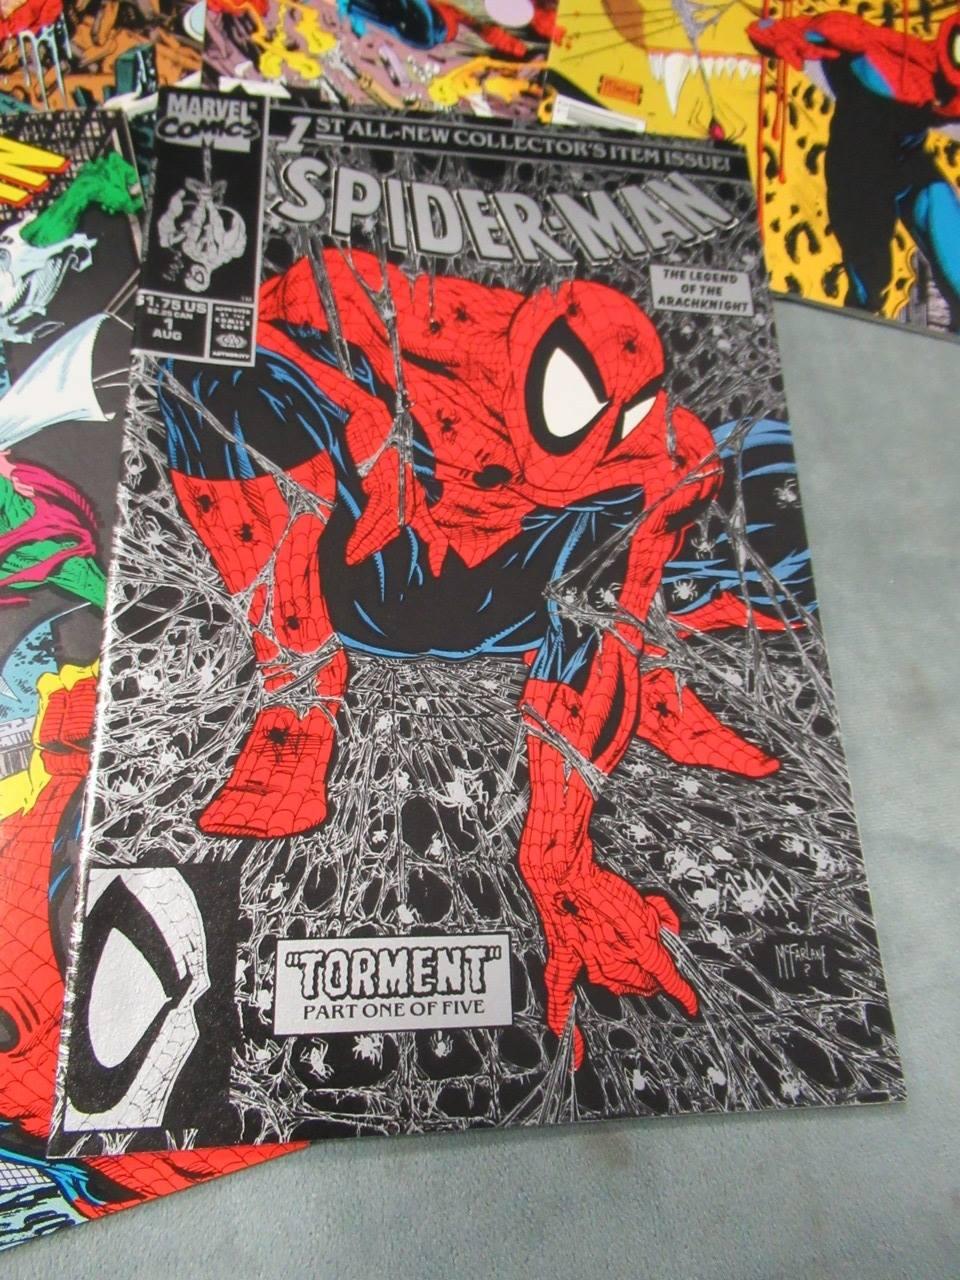 Spider-Man #1-5, 13/1990 Todd McFarlane